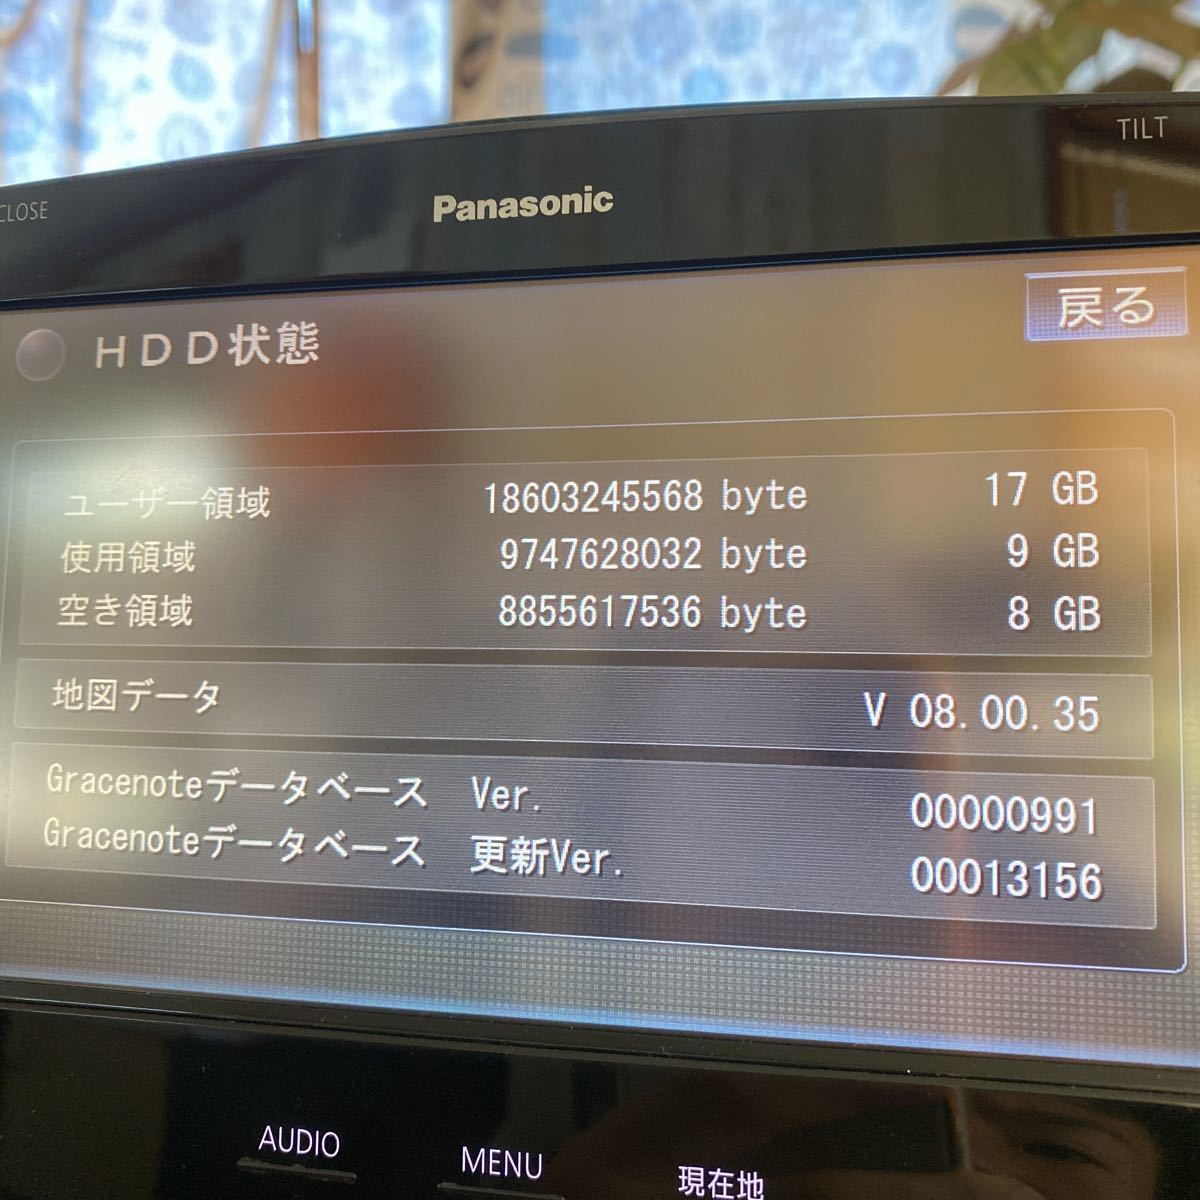  Panasonic Strada CN-HX1000D дистанционный пульт руководство пользователя B-cas устройство для считывания карт Touareg аудио панель 